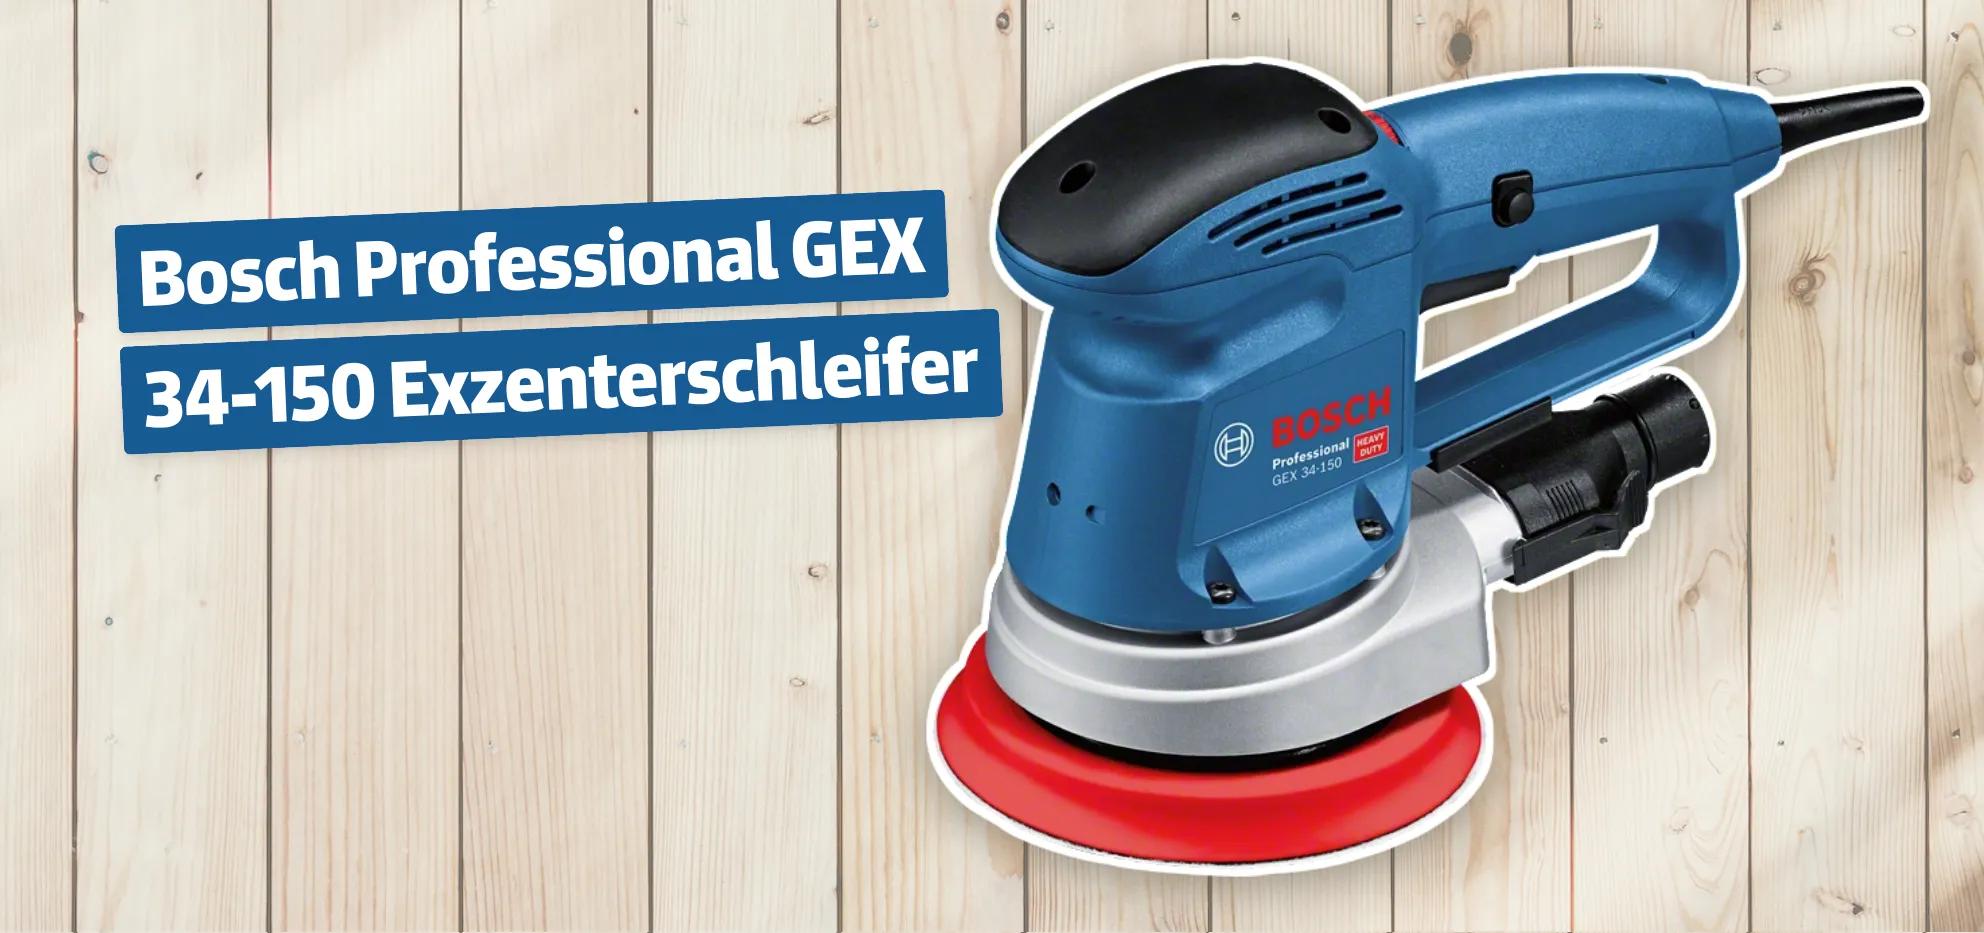 Bosch Professional GEX 34-150 Exzenterschleifer